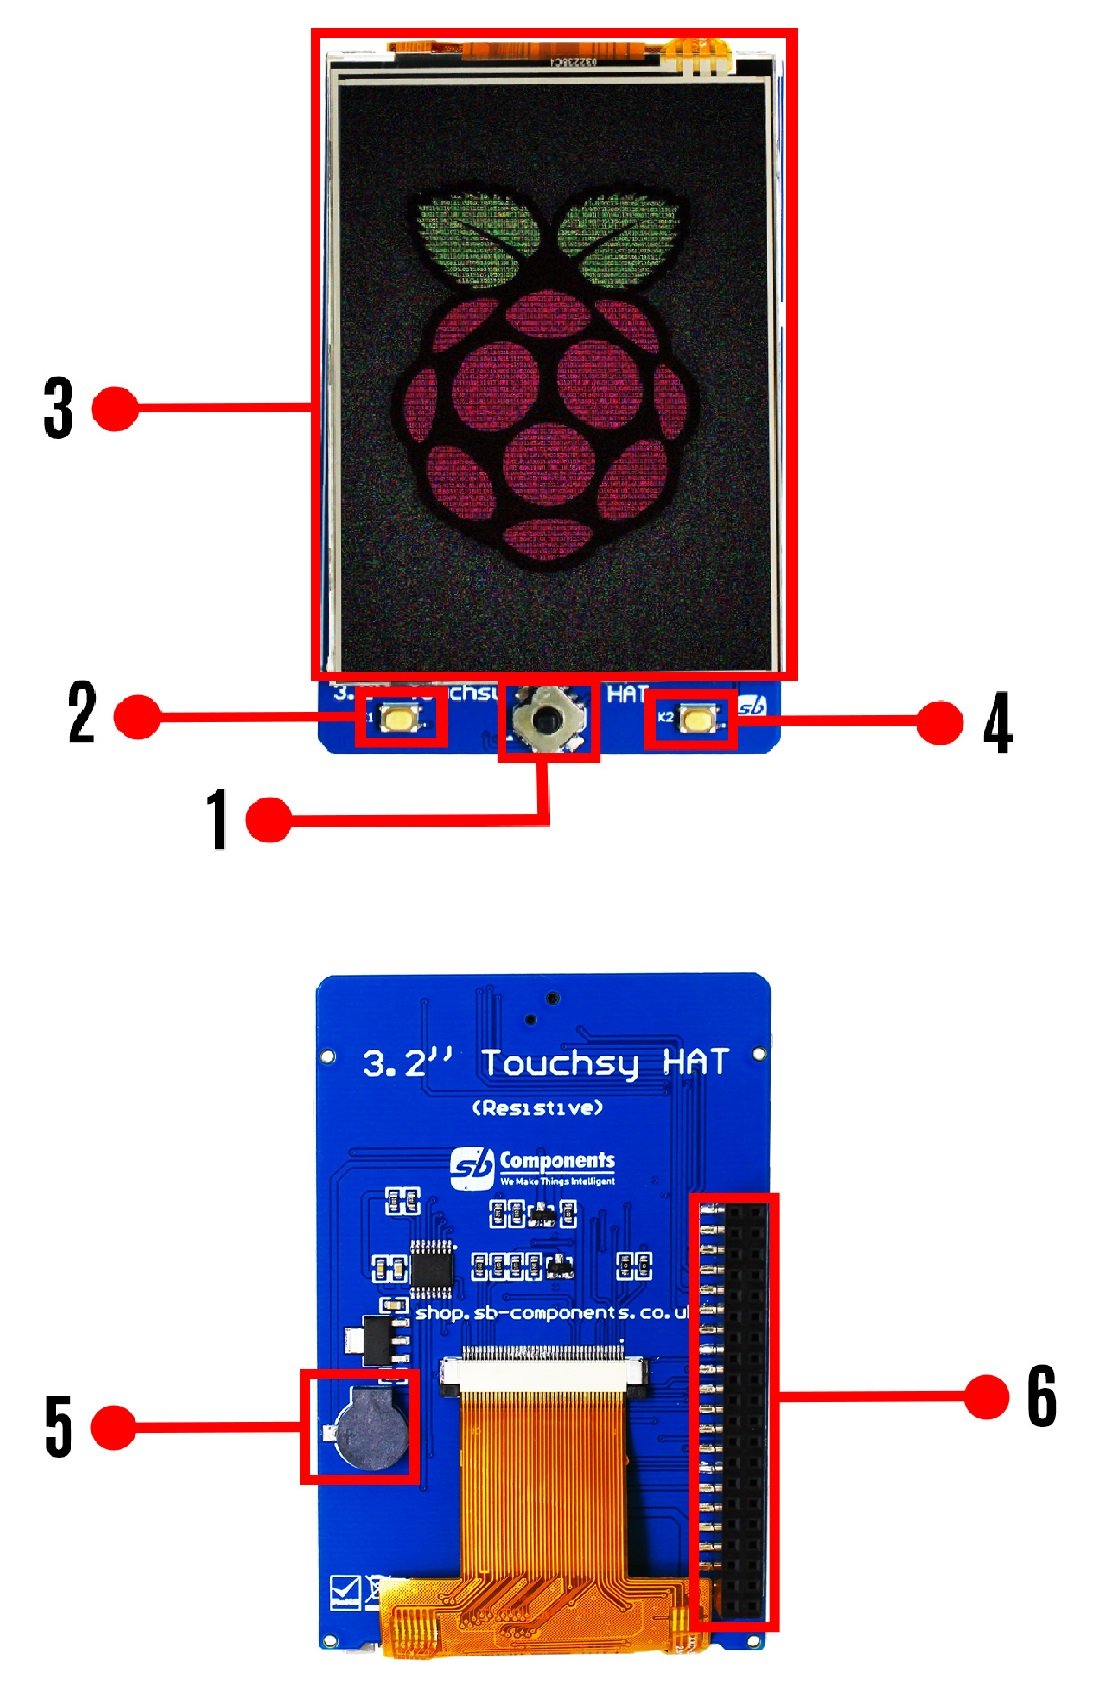 Touchsy HAT - nakładka z dotykowym wyświetlaczem LCD 3,2'' 320 x 240 px do Raspberry Pi - SB Components 26418 - rozmieszczenie elementów na płytce